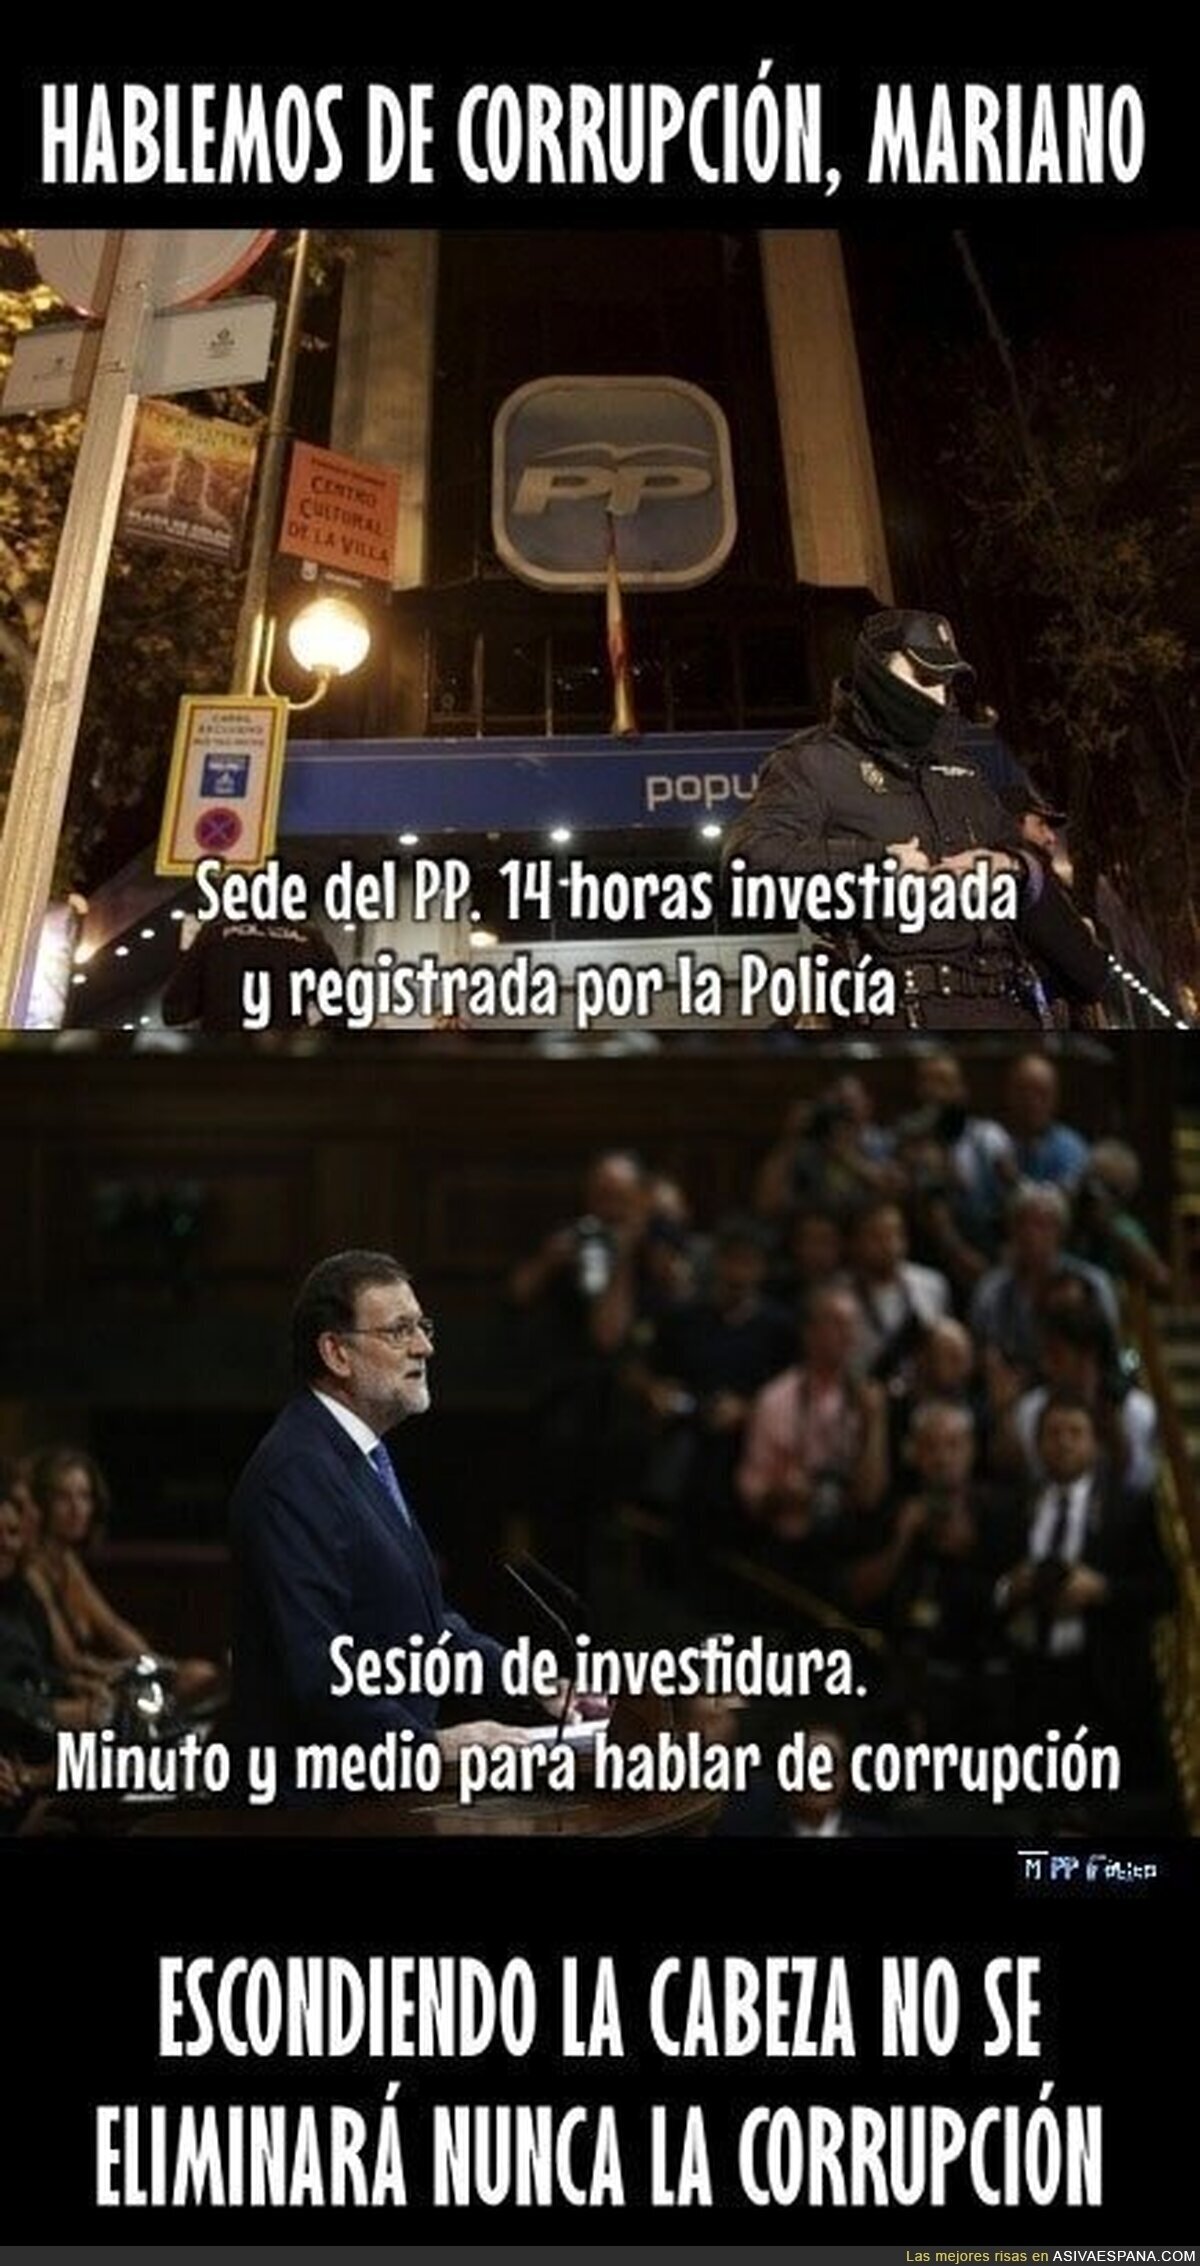 Rajoy, luchando contra la corrupción desde tiempos inmemoriales